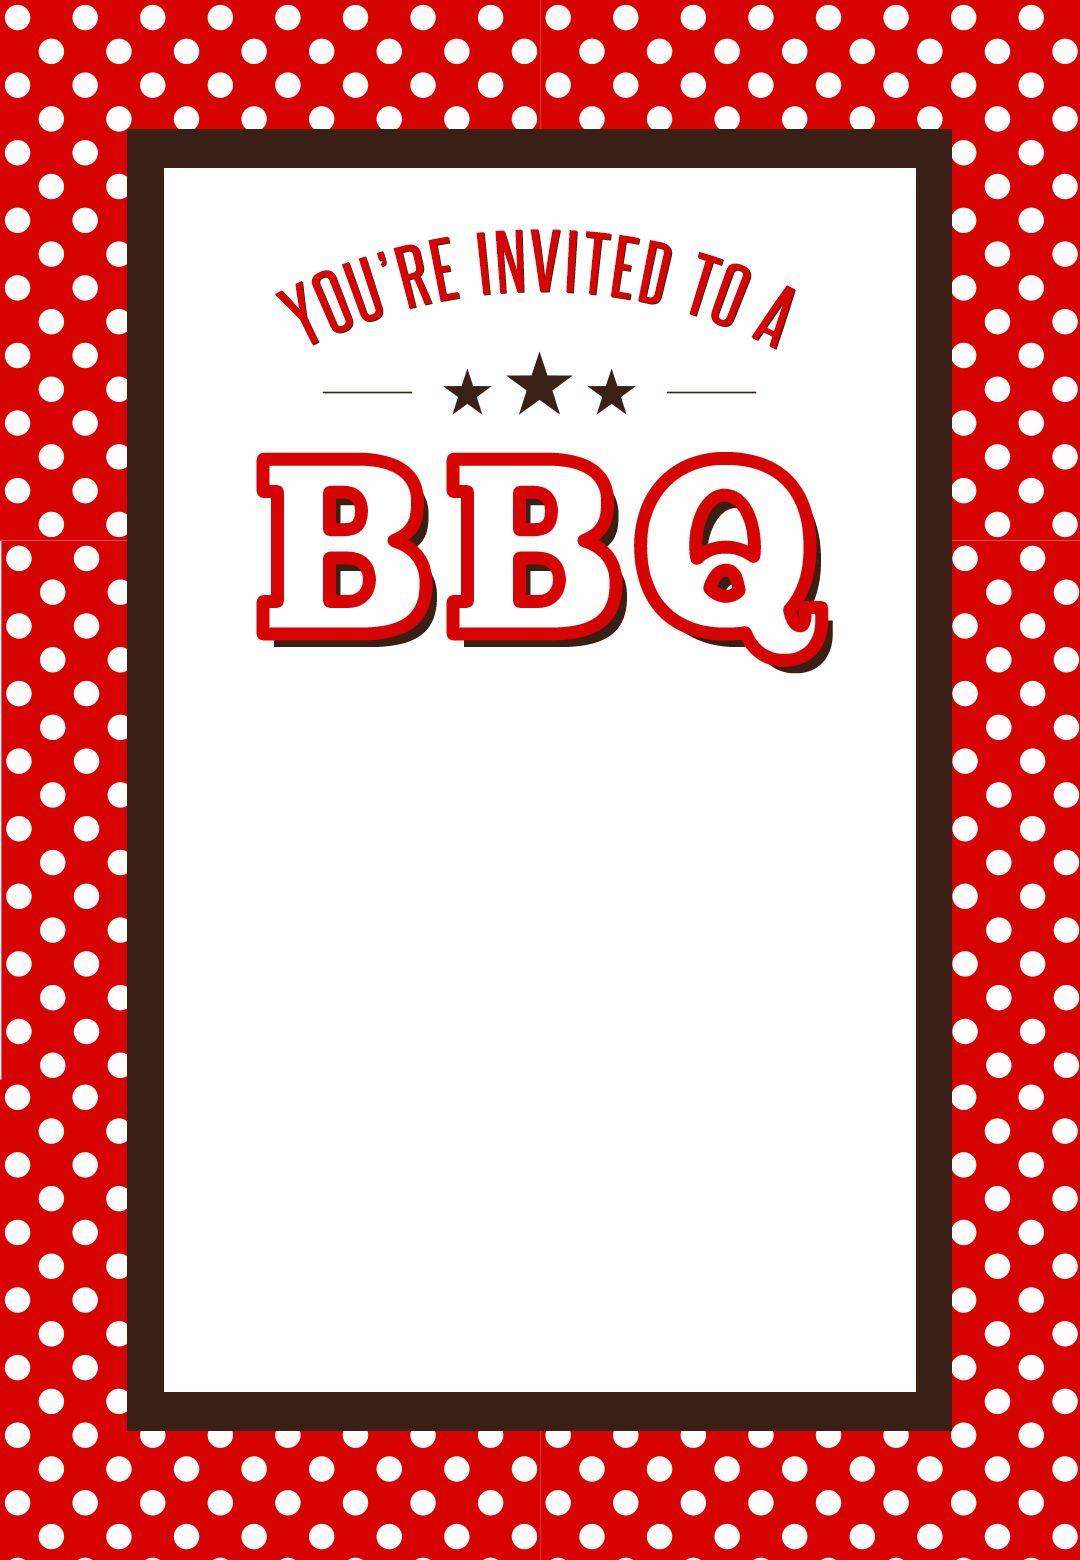 BBQ Invitation customizable Bbq Party Invitations Party Invite